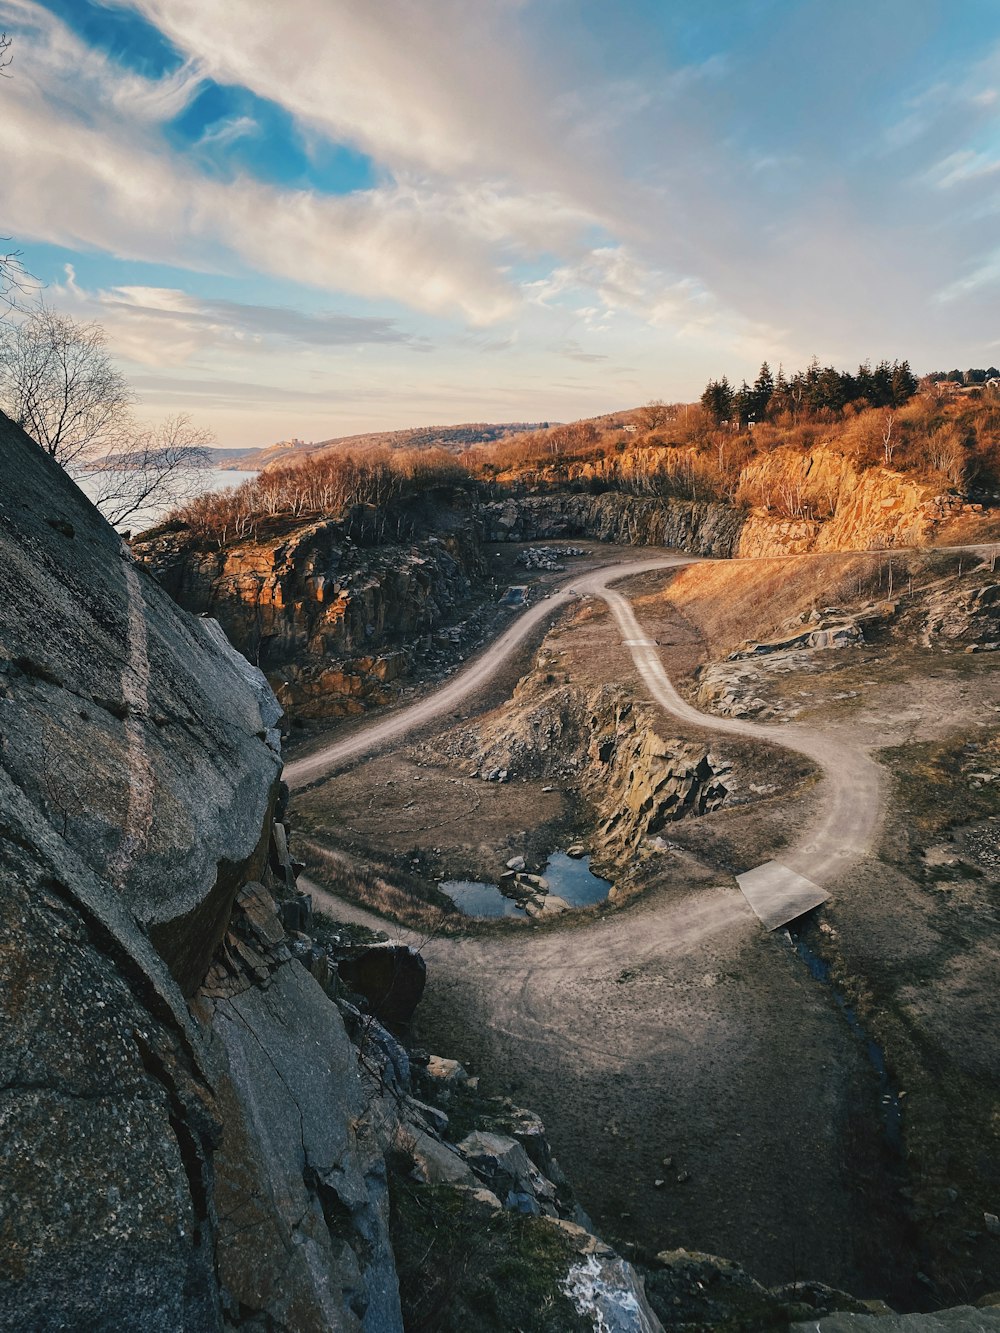 Un camino de tierra que serpentea a través de un paisaje rocoso